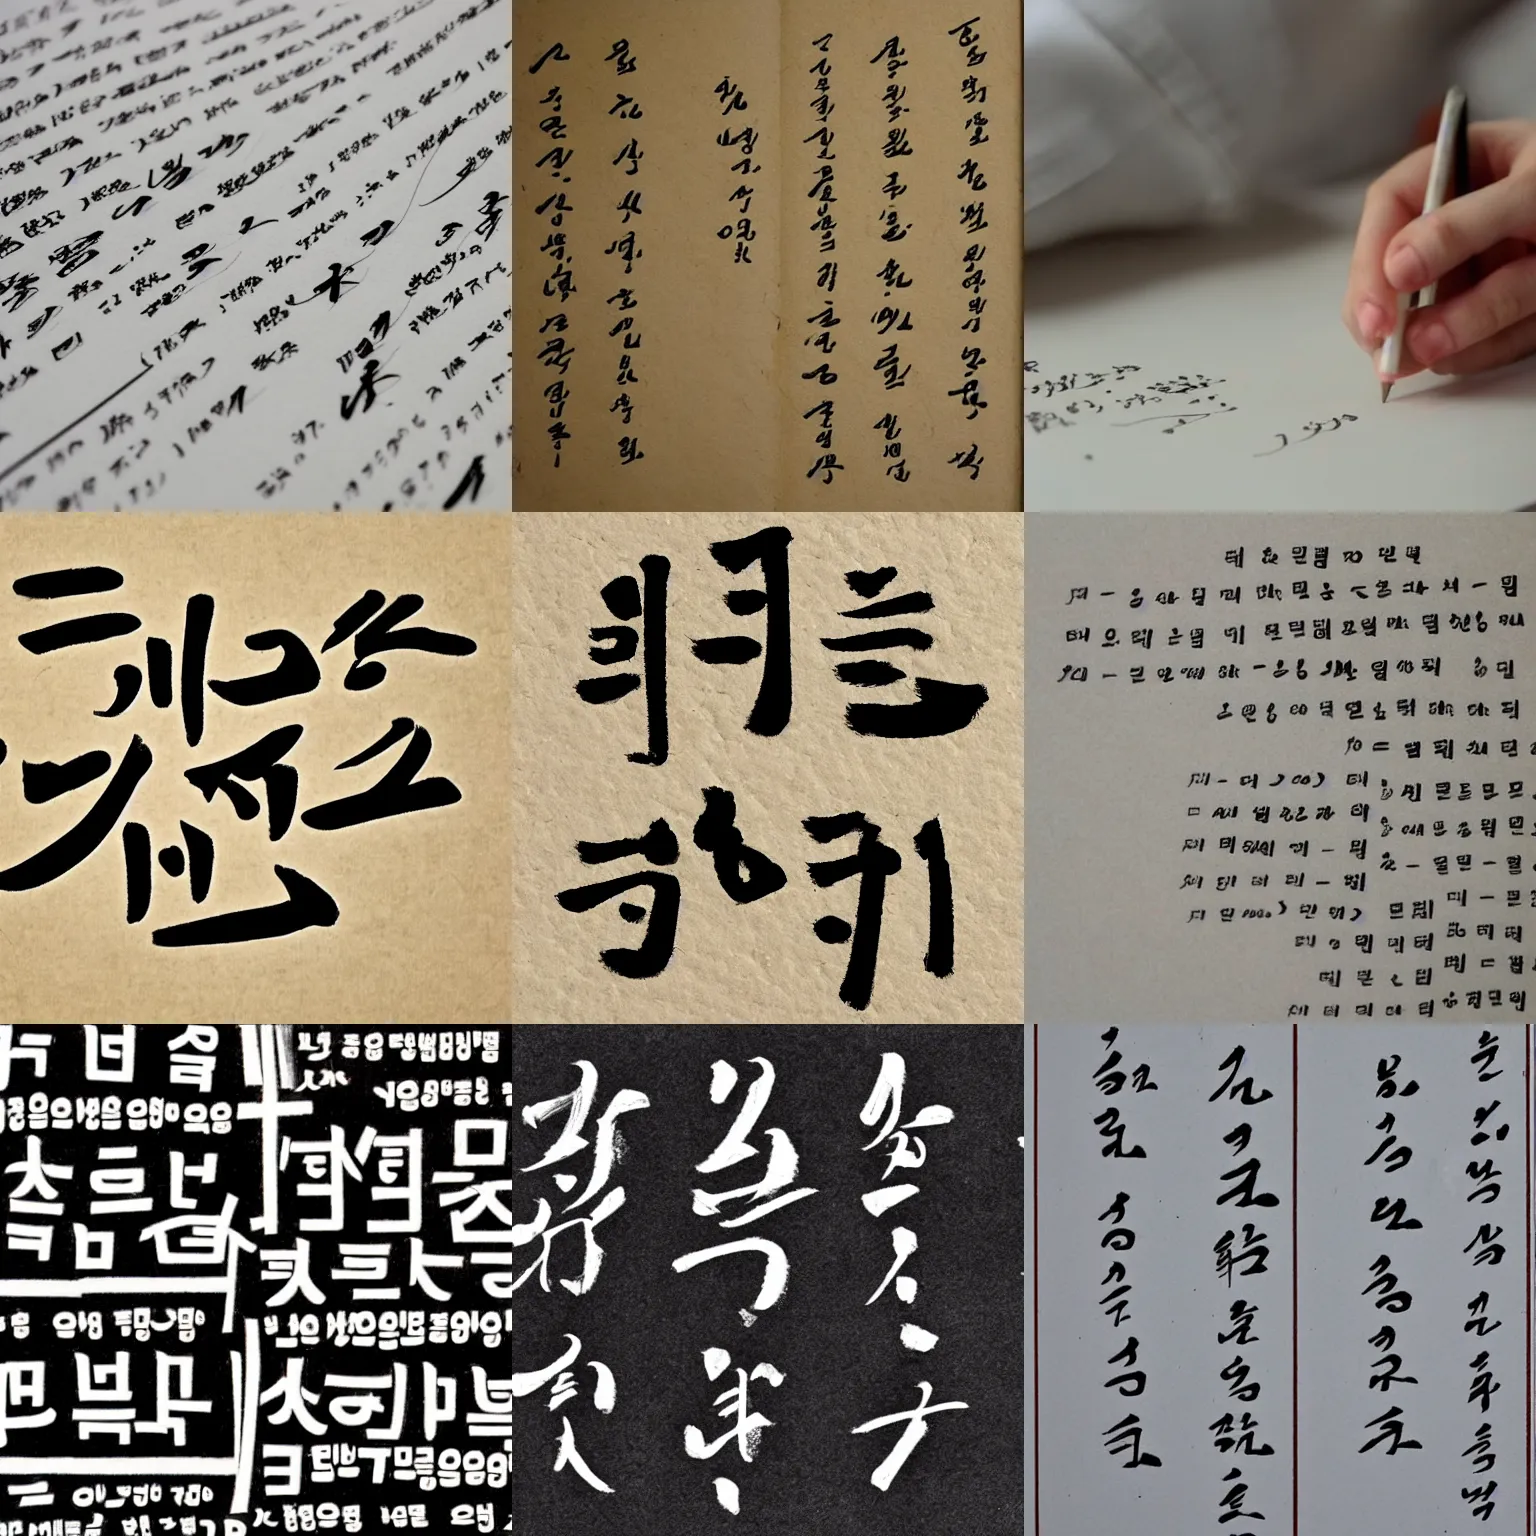 Prompt: korean handwriting